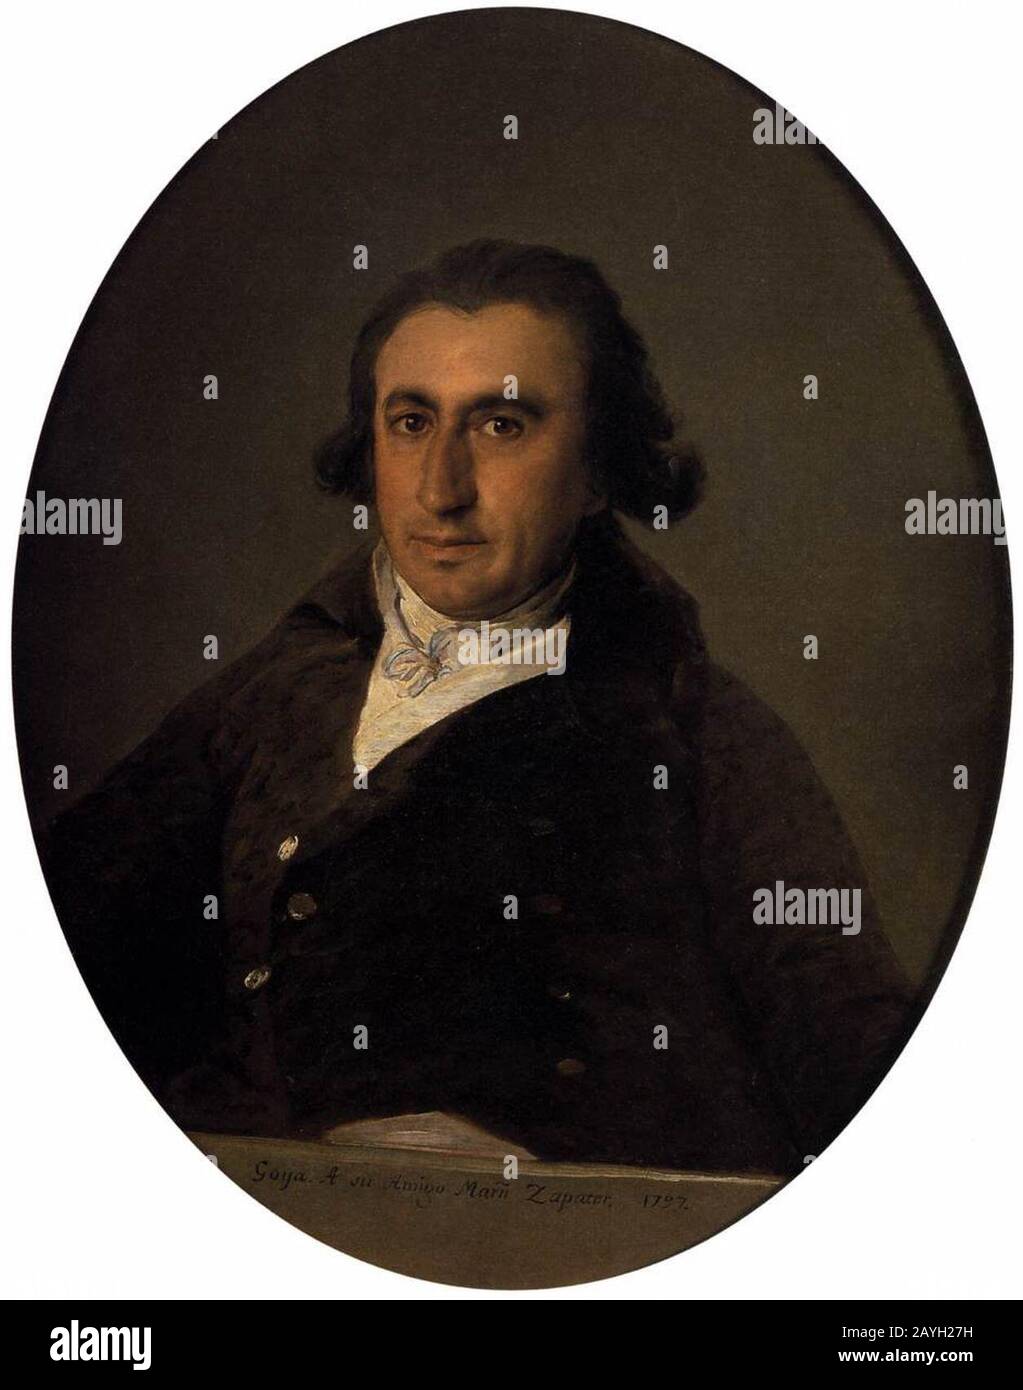 Francisco de Goya y Lucientes - Portrait of Martín Zapater Stock Photo